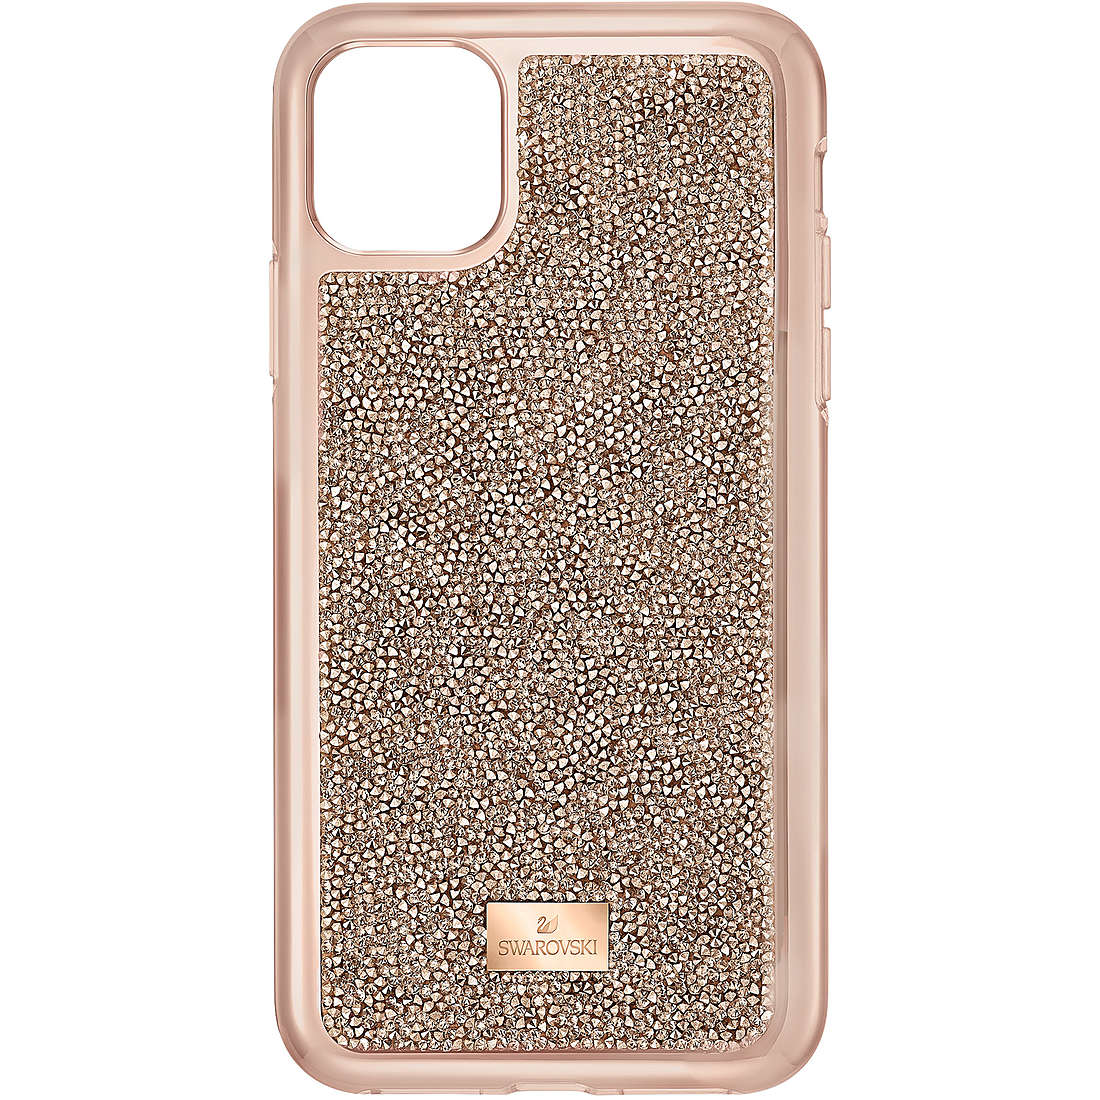 smartphone case Swarovski Glam Rock 5515624